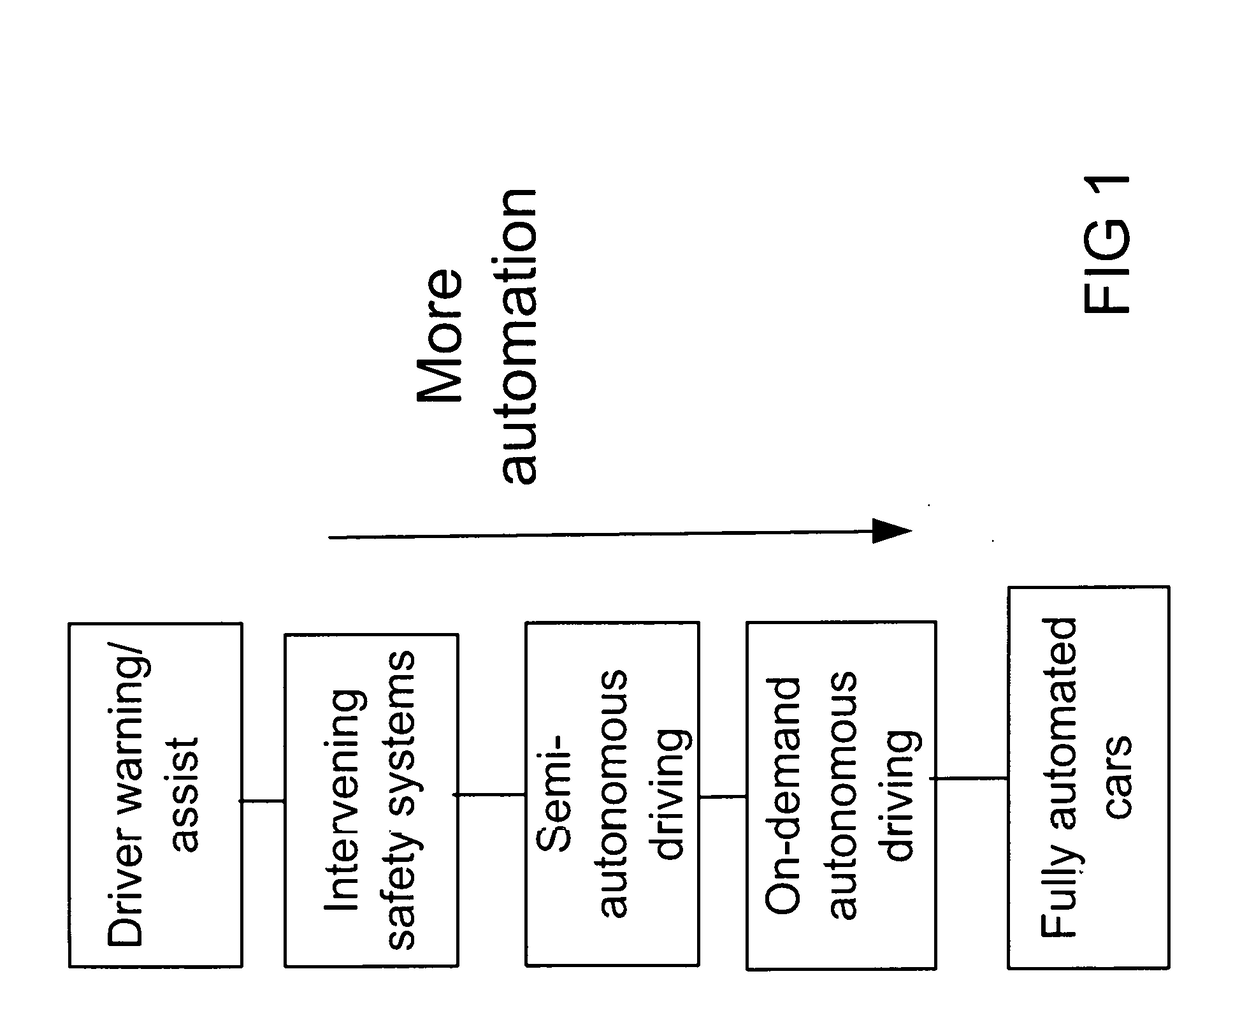 Positioning System Based on Geofencing Framework